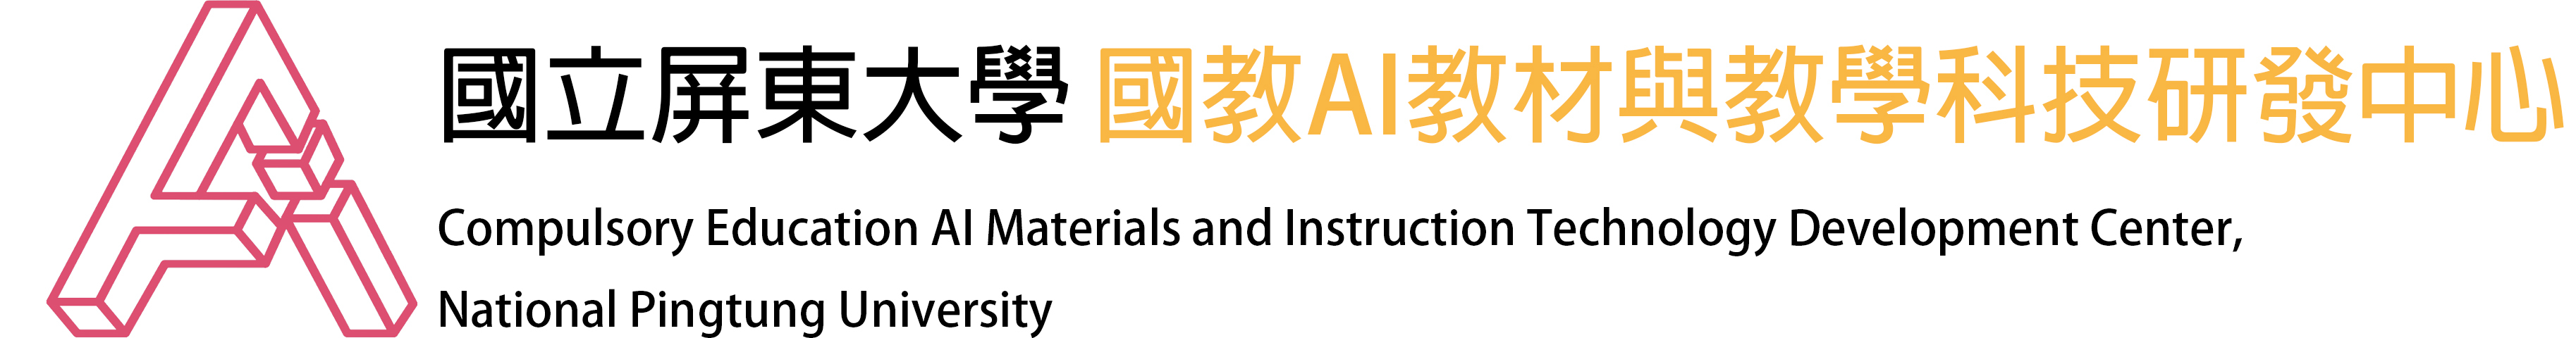 國立屏東大學國教AI教材與教學研發中心